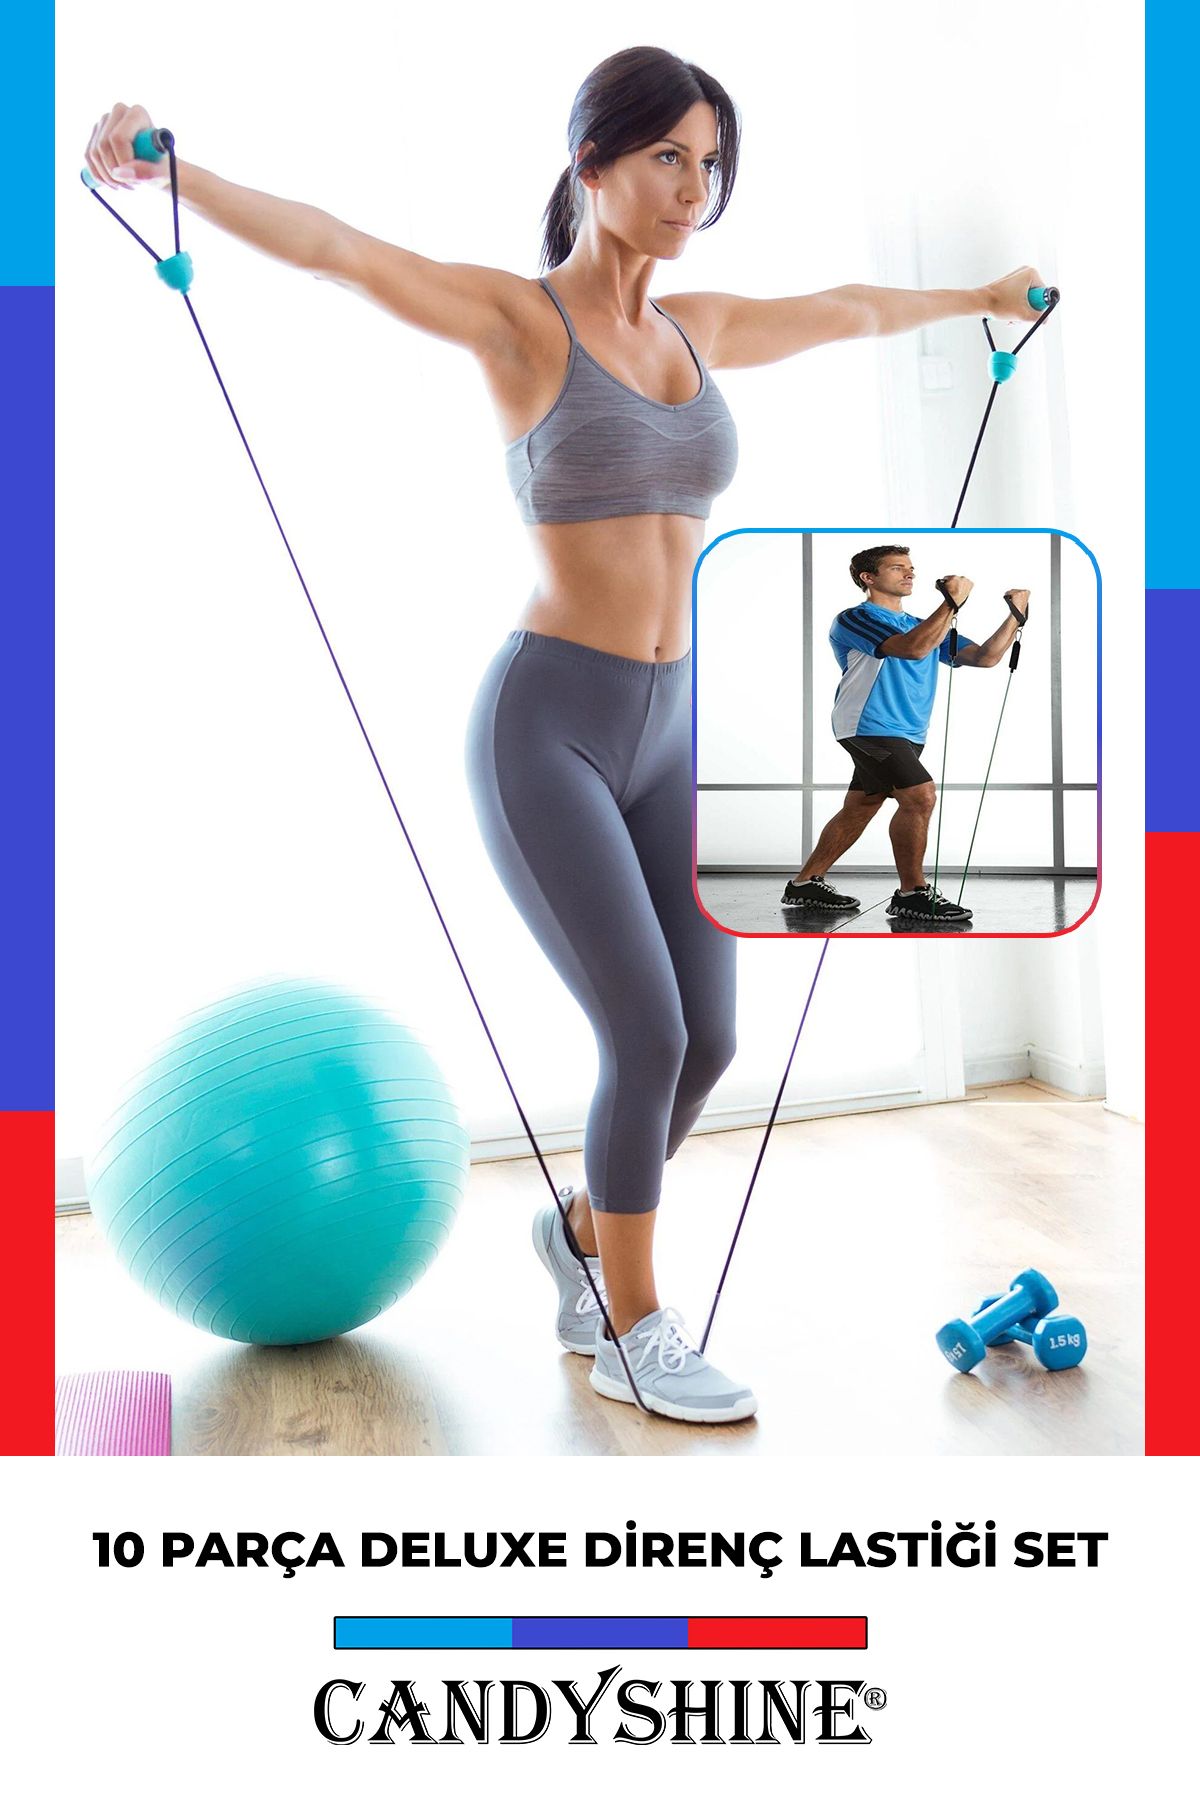 CandyShine 10 Parça Direnç Lastiği Seti Pilates Kondisyon Yoga Kardiyo  Aerobik Fitness Egzersiz Direnç Lastik Fiyatı, Yorumları - Trendyol